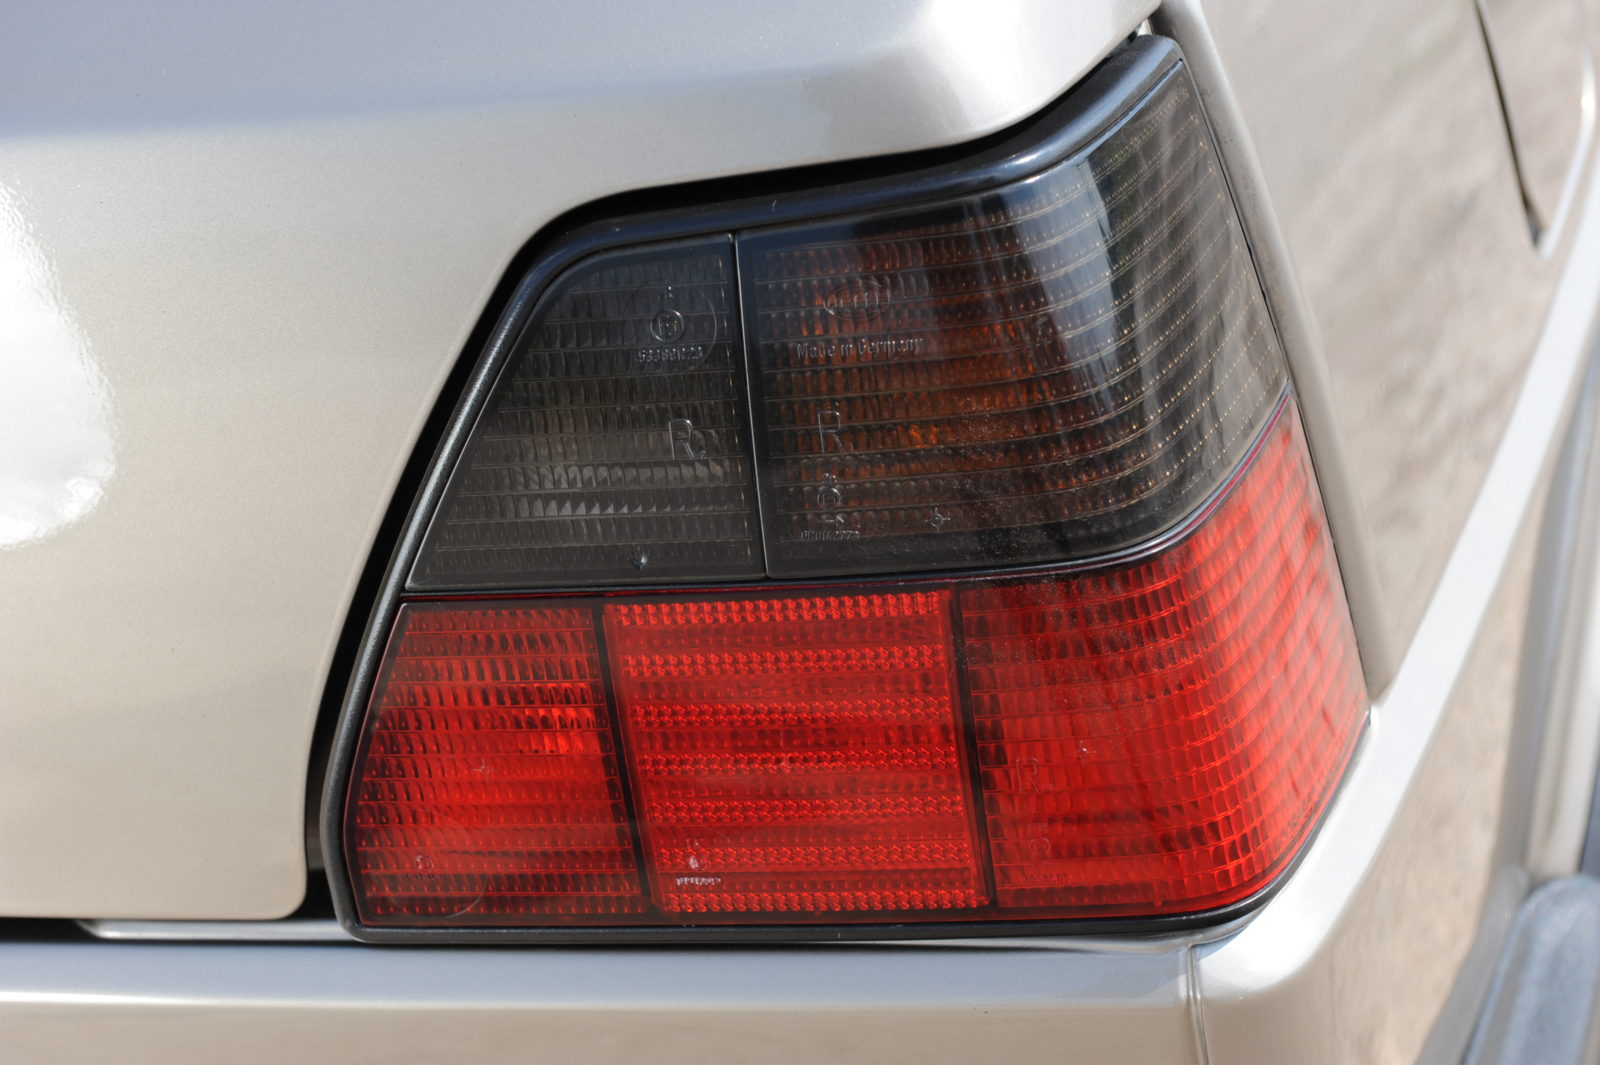 VW Golf Mk 2 1.6 TD tylne światła